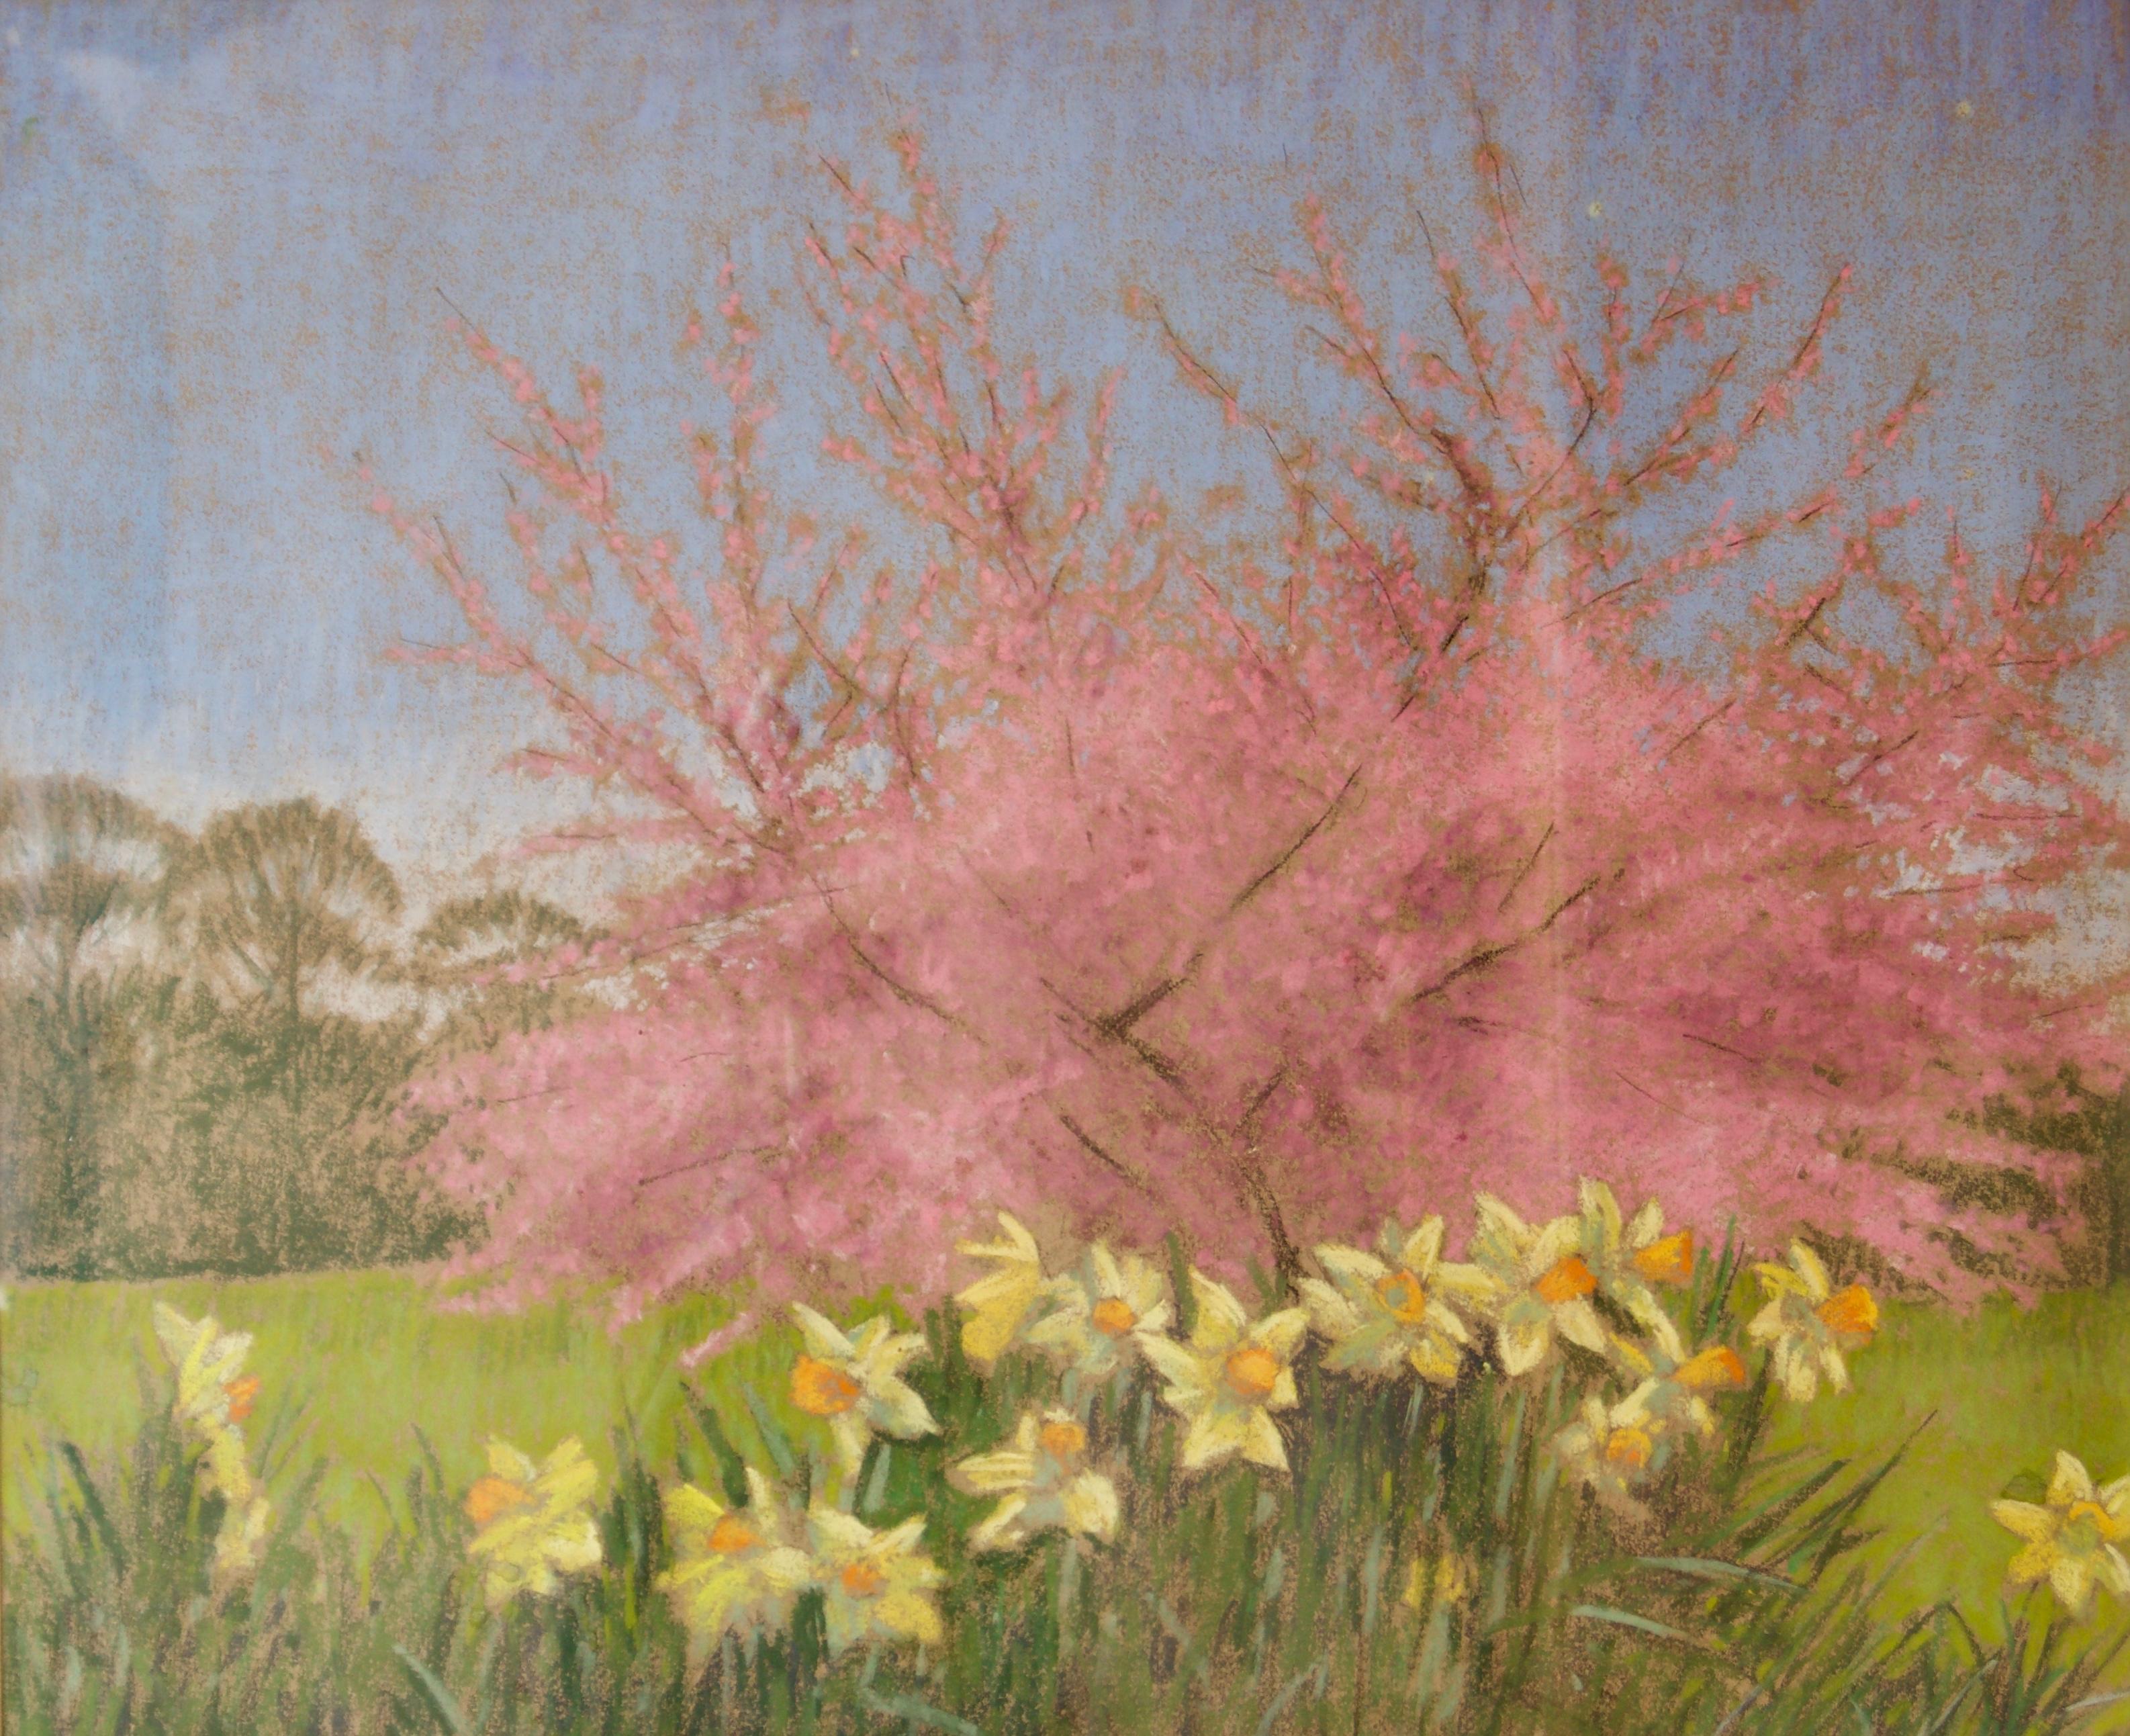 Tree and Dandelions - Paysage impressionniste du milieu du 20e siècle